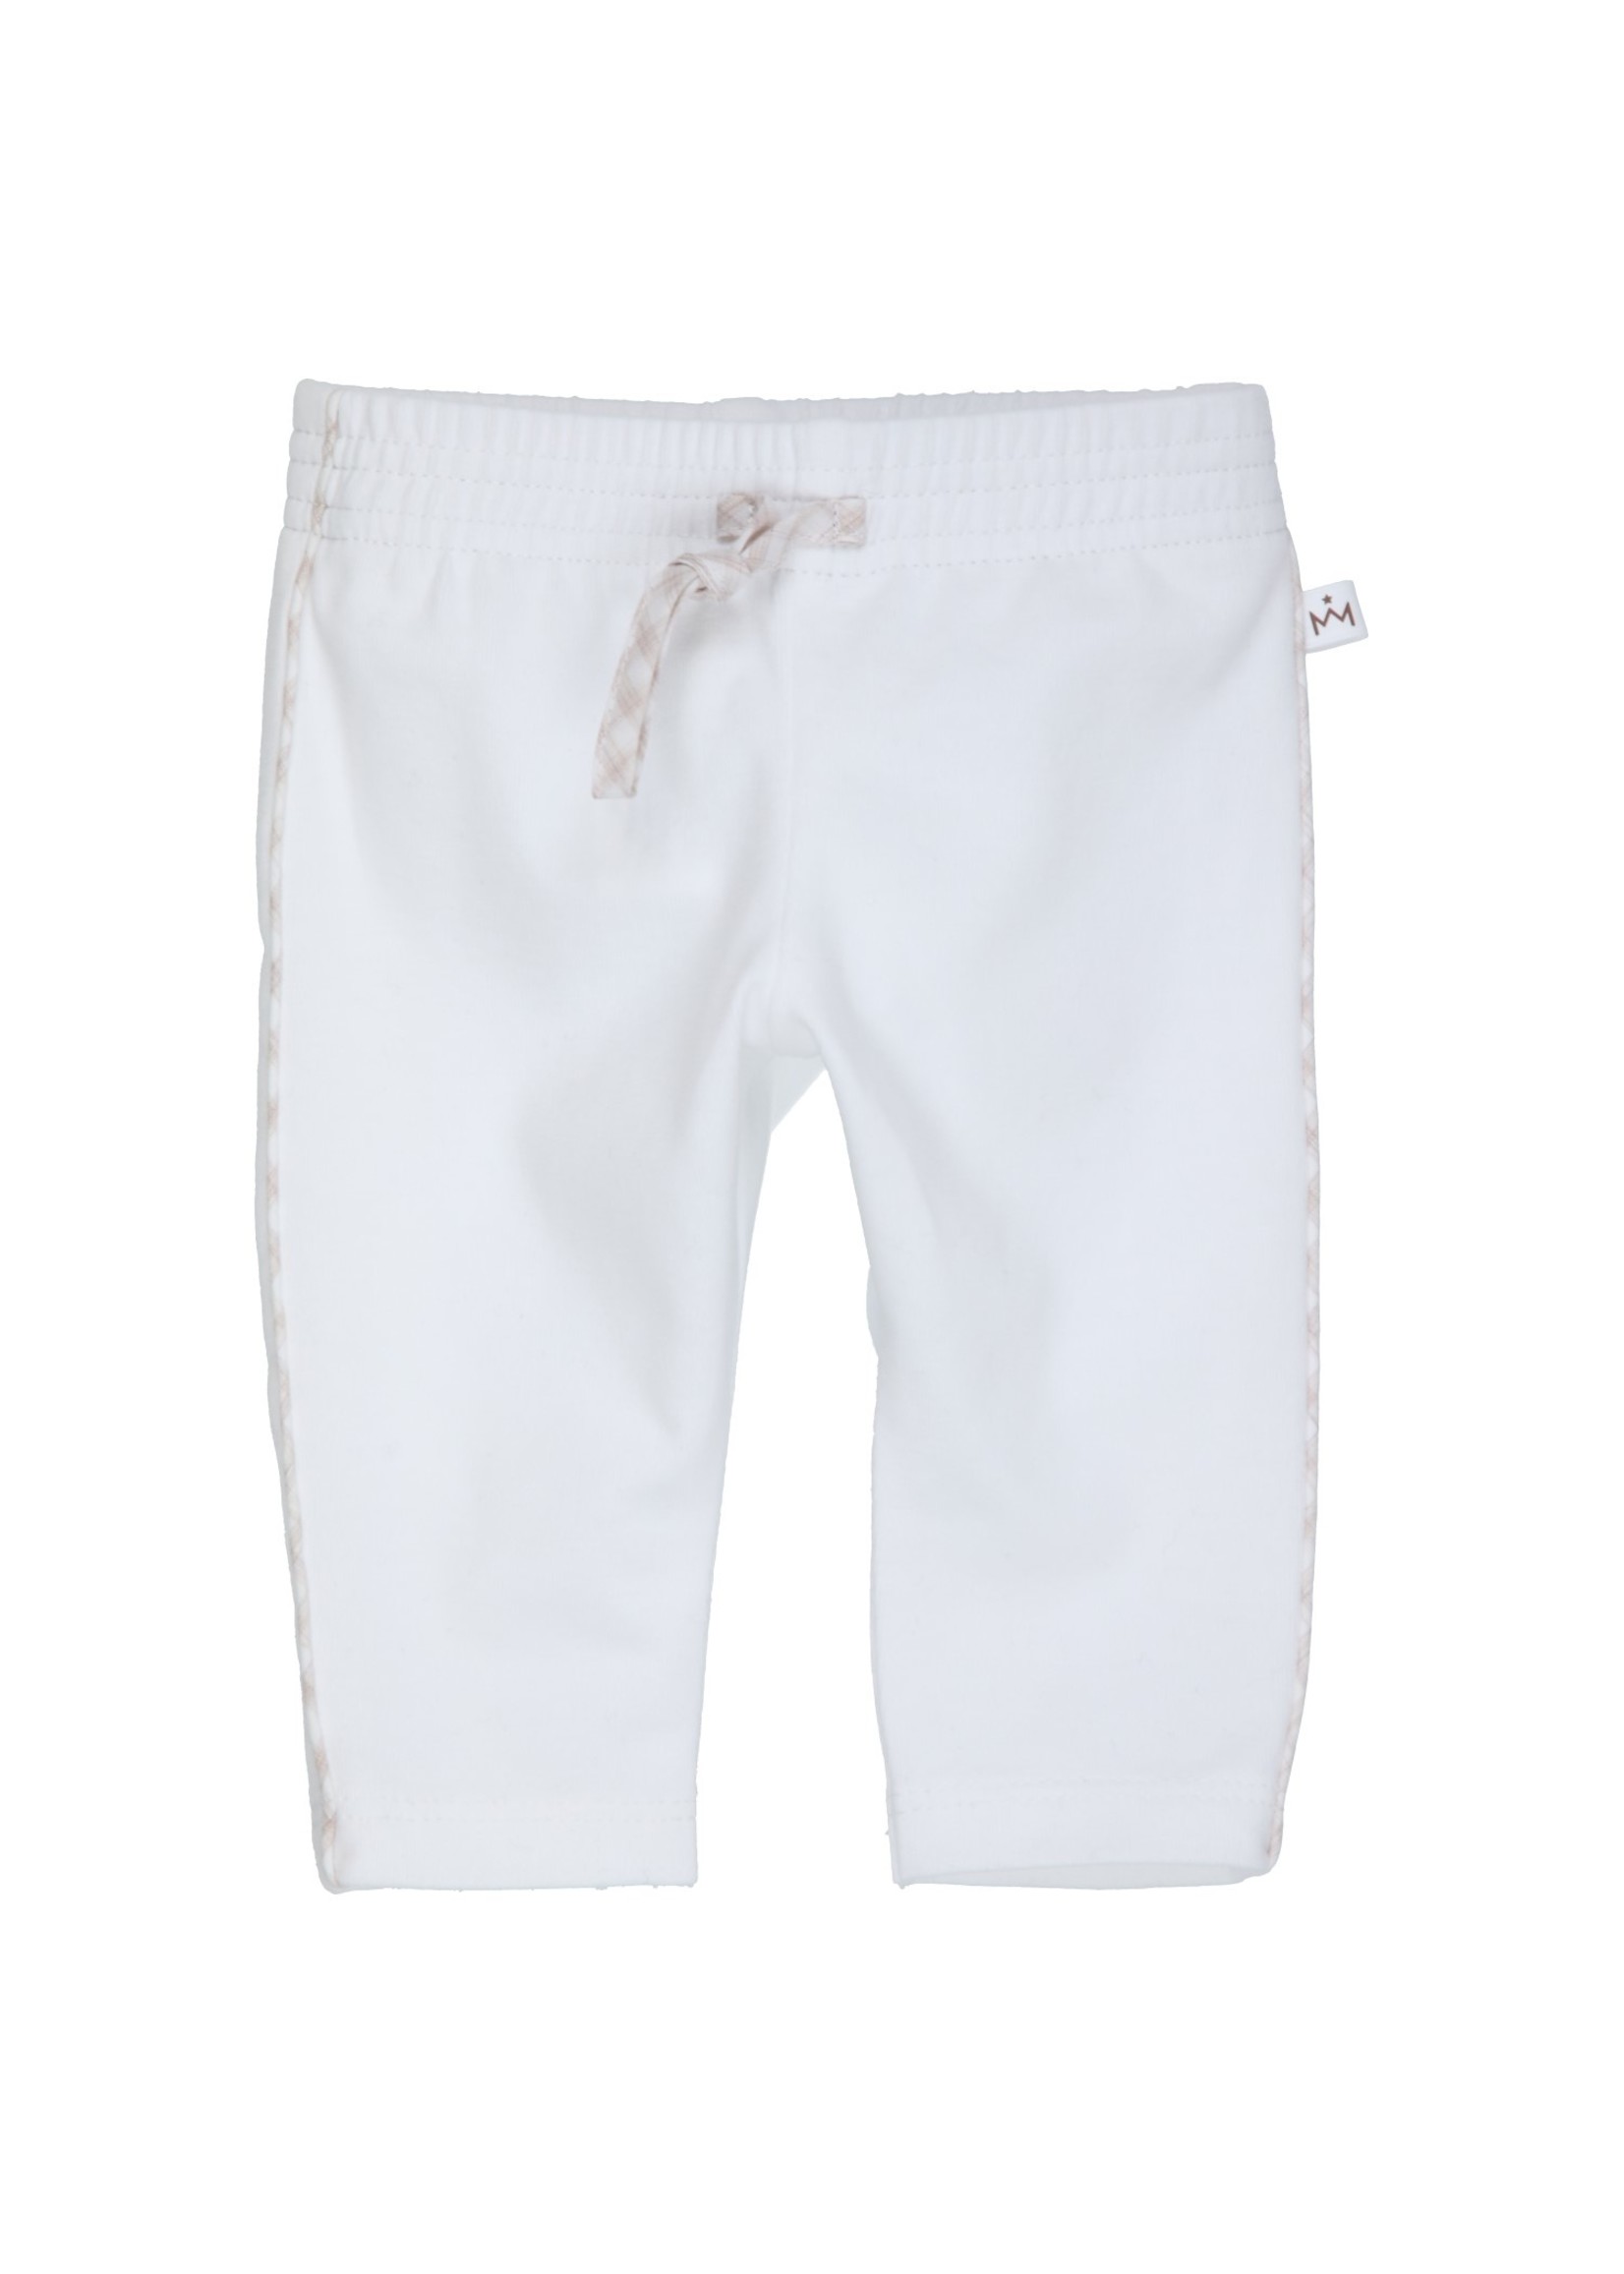 Gymp Pants Aerodoux White - Beige